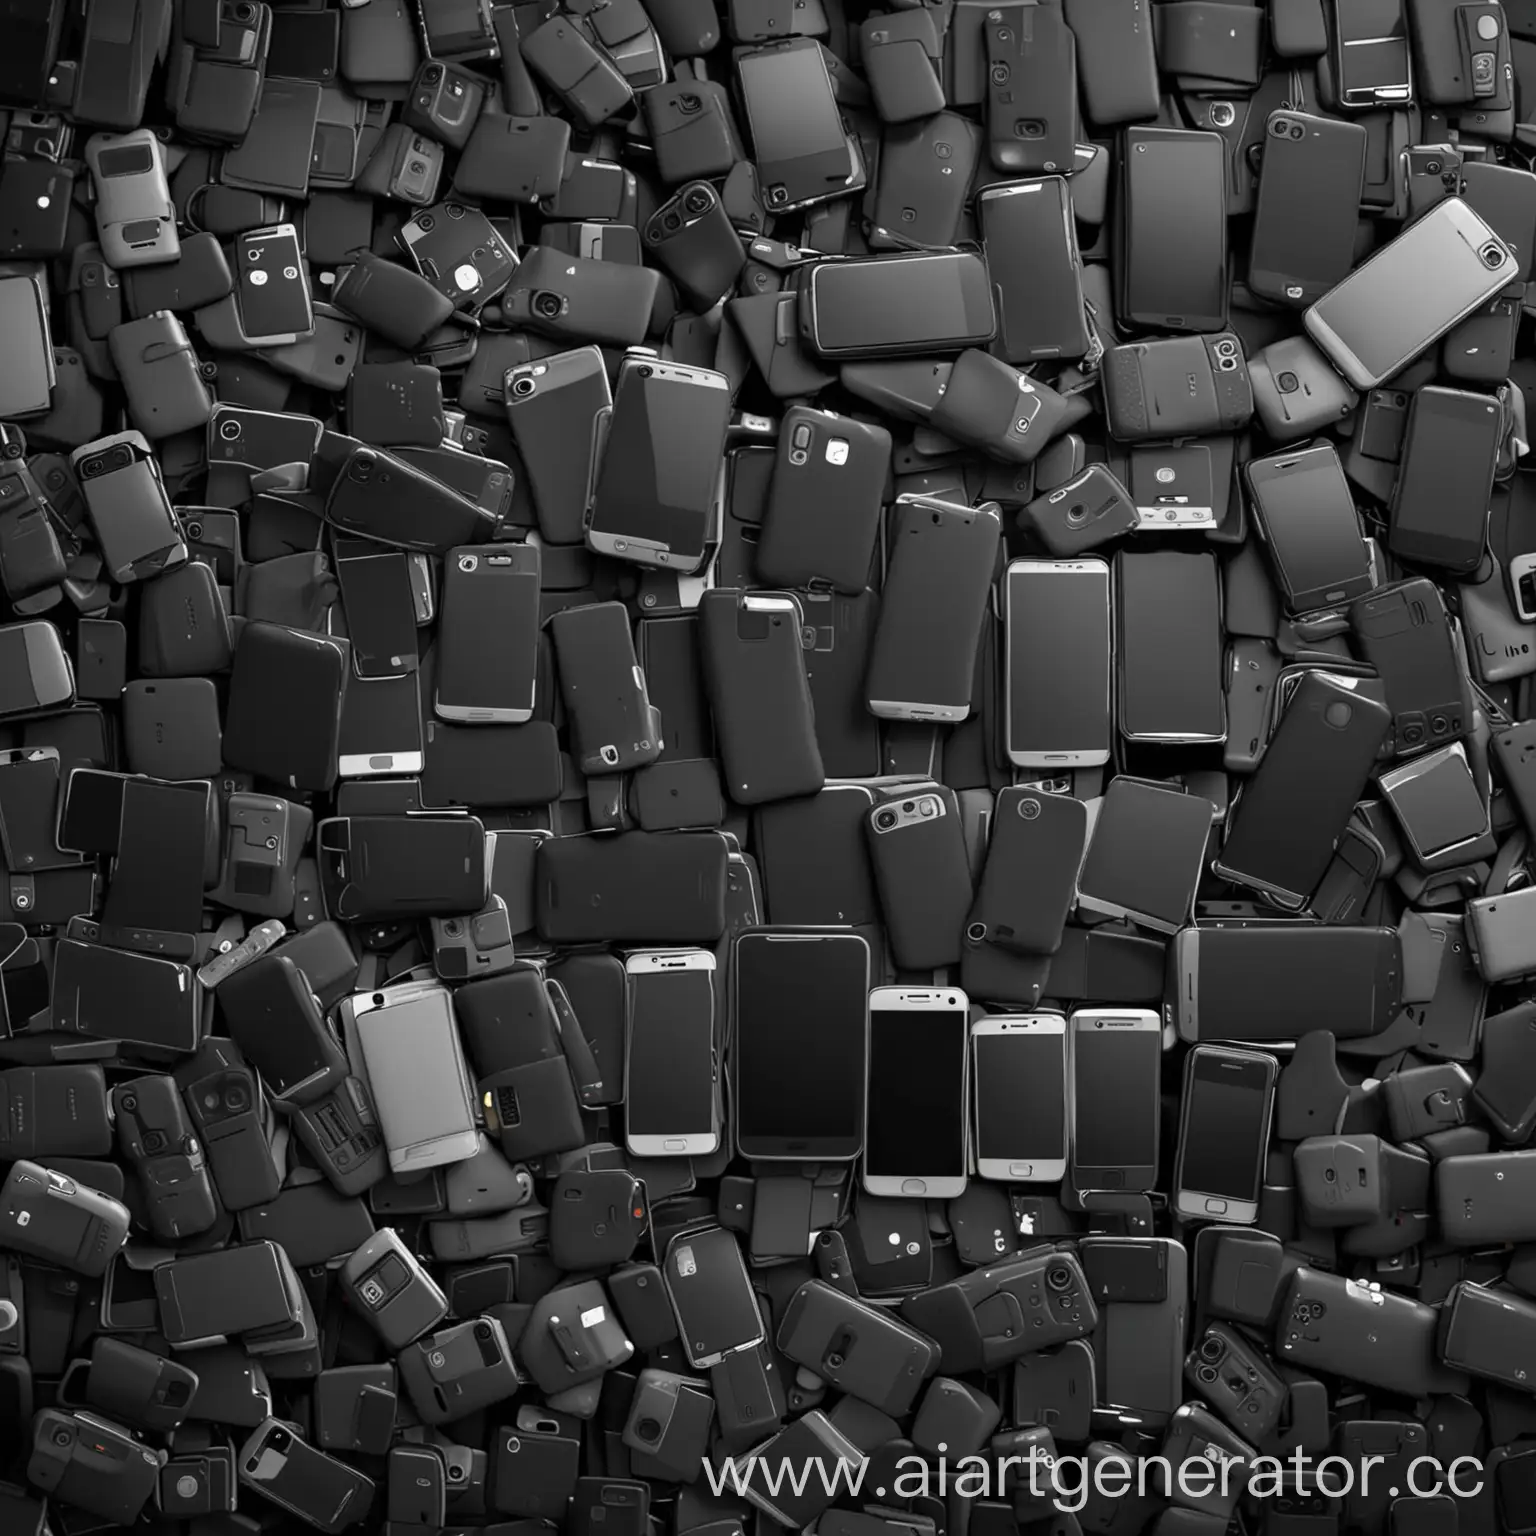 фон из лежащих смартфонов и телефонов, реализм, 4K, FHD, арт, темный, черный, серый, 2000*2000